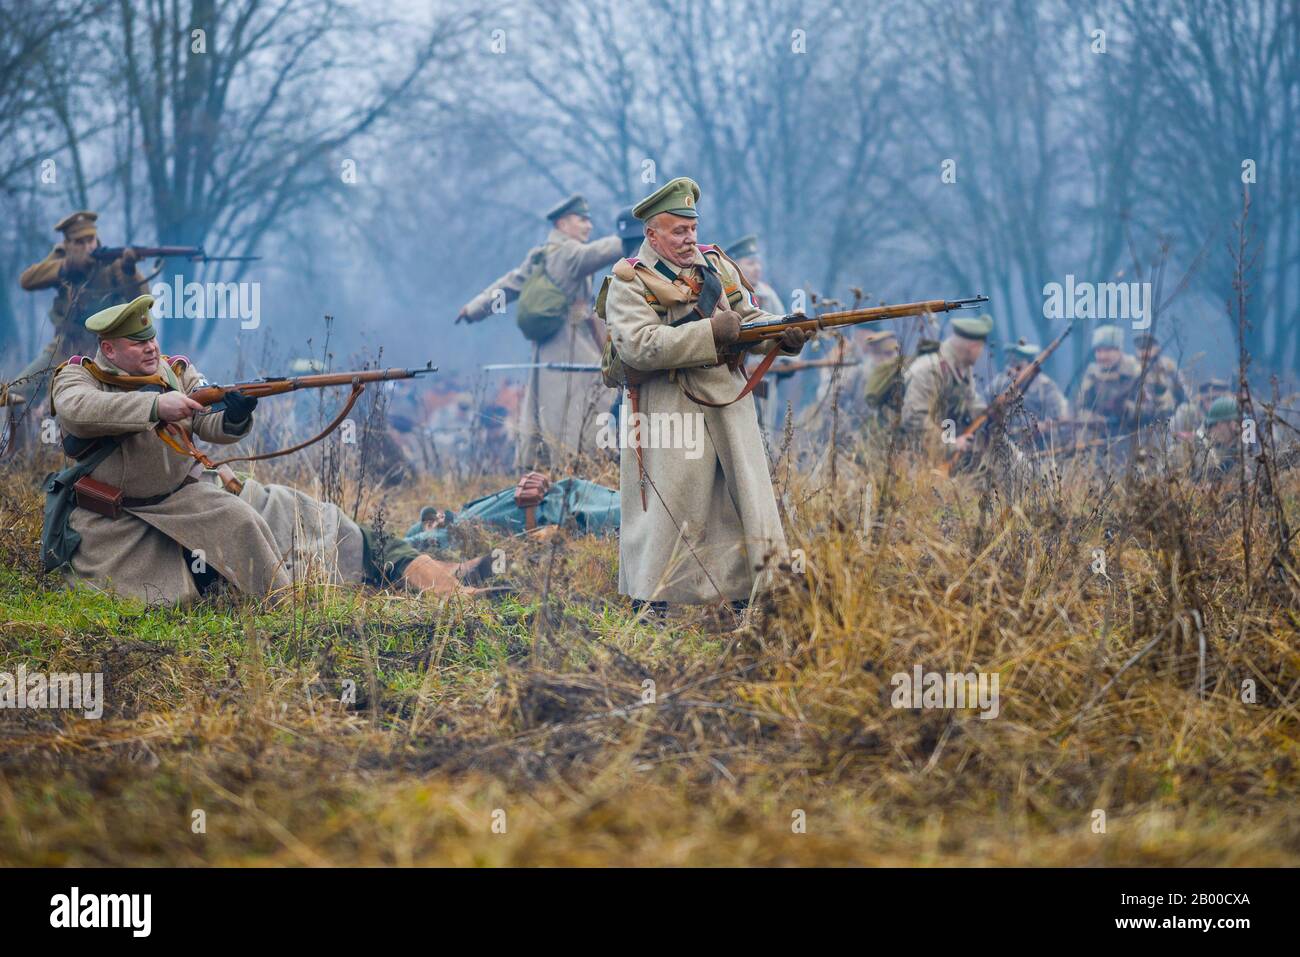 Gatchina, RUSSLAND - 07. NOVEMBER 2015: Soldaten der Armee von General Yudenich auf dem Schlachtfeld. Ein Fragment der internationalen Militärhistorie Stockfoto